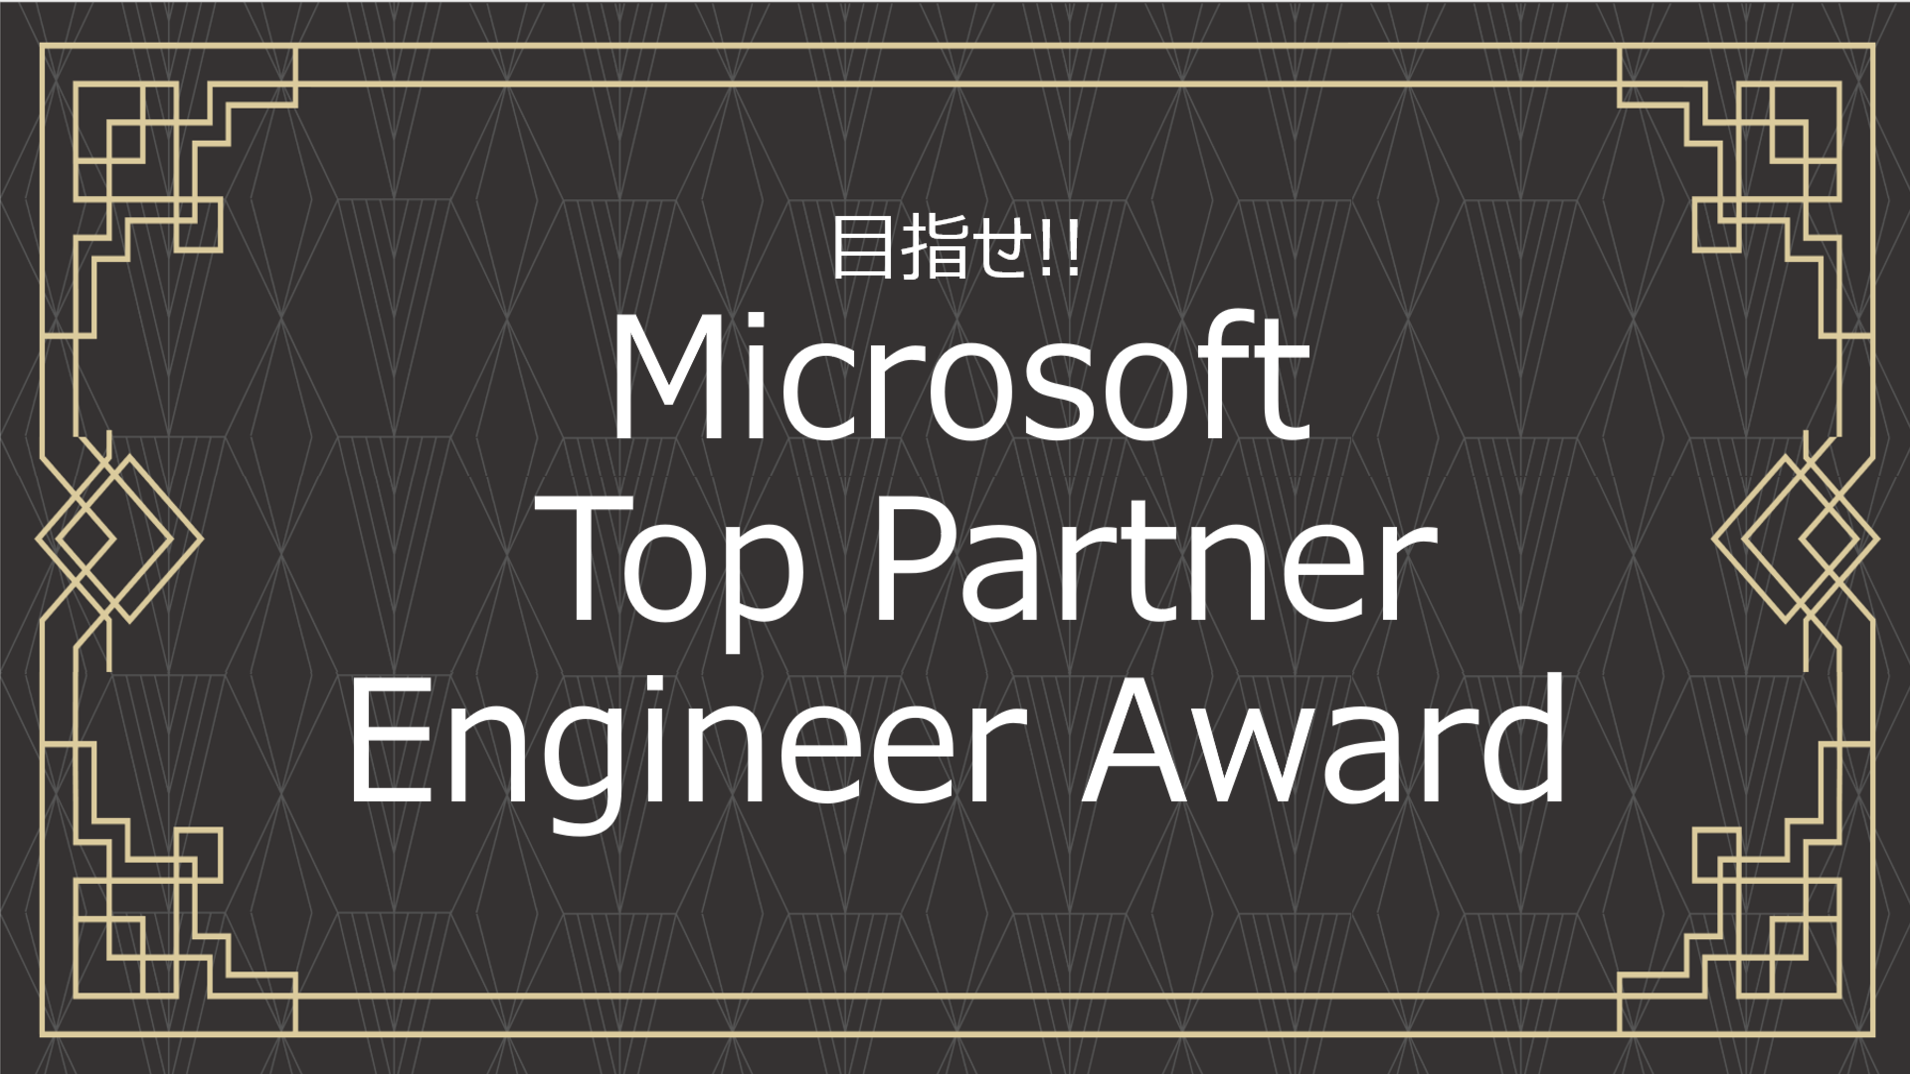 パートナーの個人を表彰する新アワード。「Microsoft Top Partner Engineer Award」始まったってよ